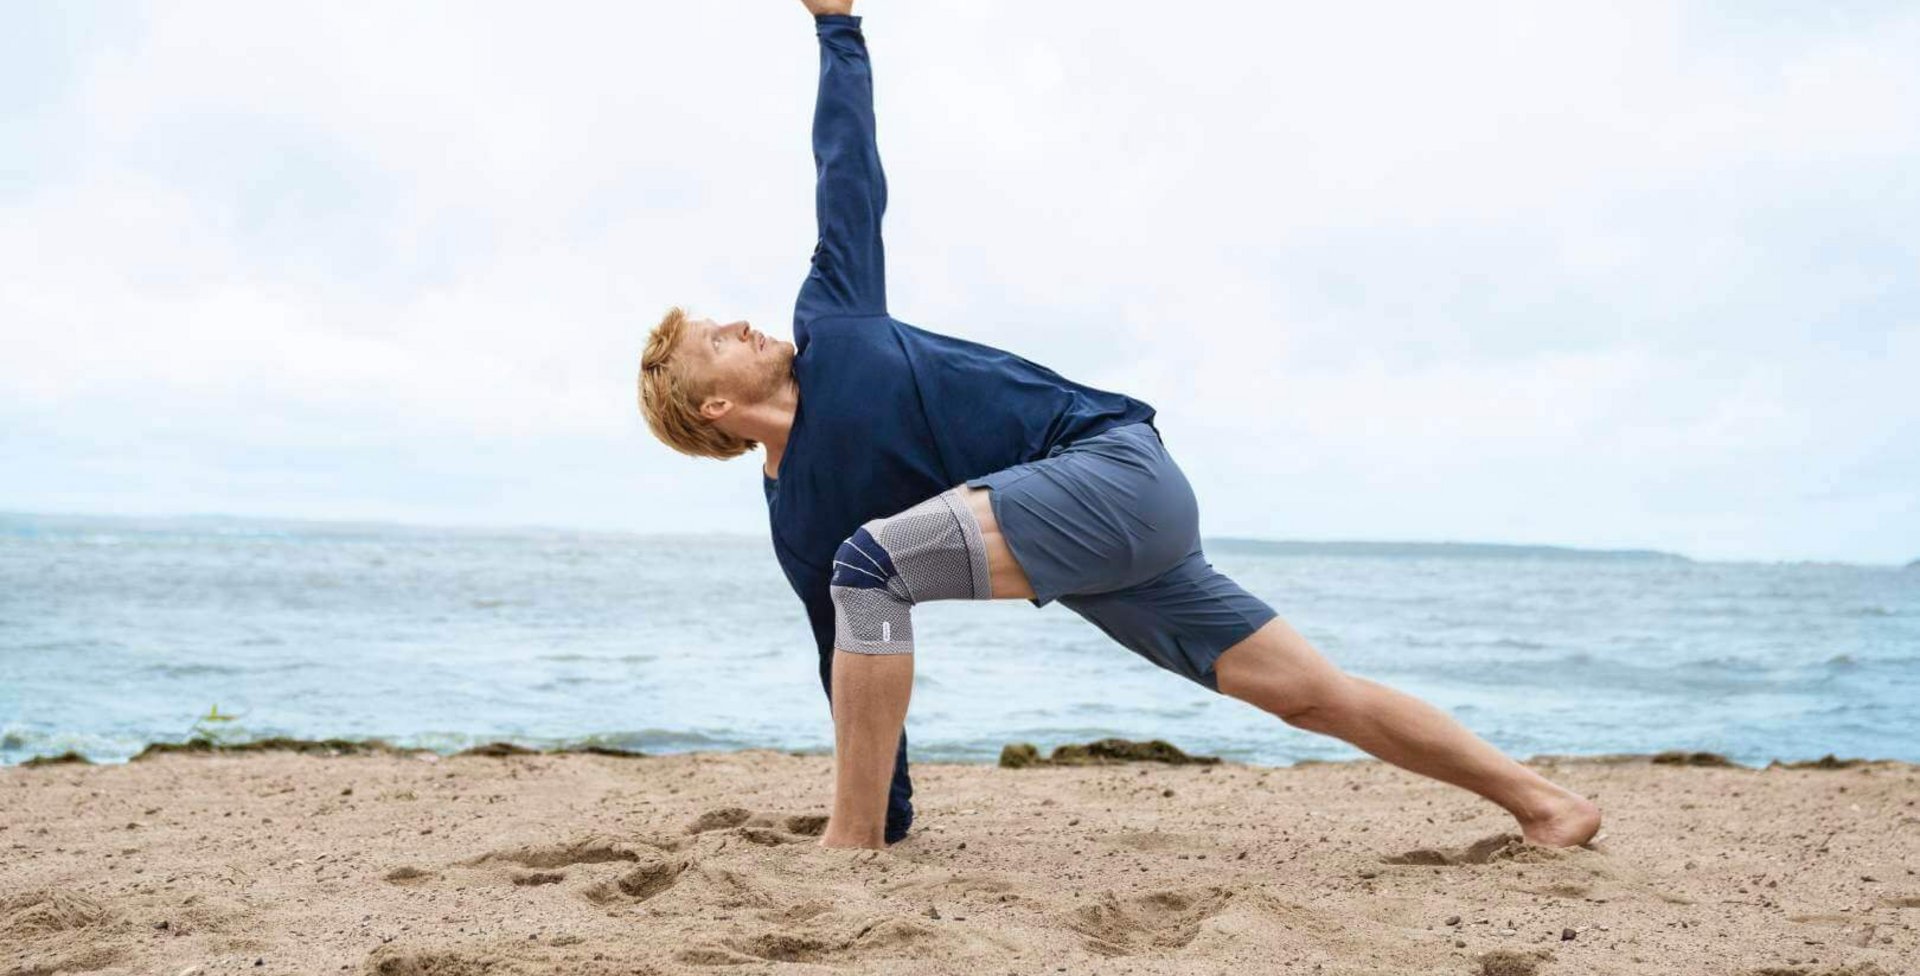 Das Bild zeigt einen Mann in Yoga-Pose am Strand. Am rechten Knie trägt er eine GenuTrain zur Unterstützung. Die Bandage bietet Entlastung und stabilisiert das Knie, um Schmerzen zu lindern.